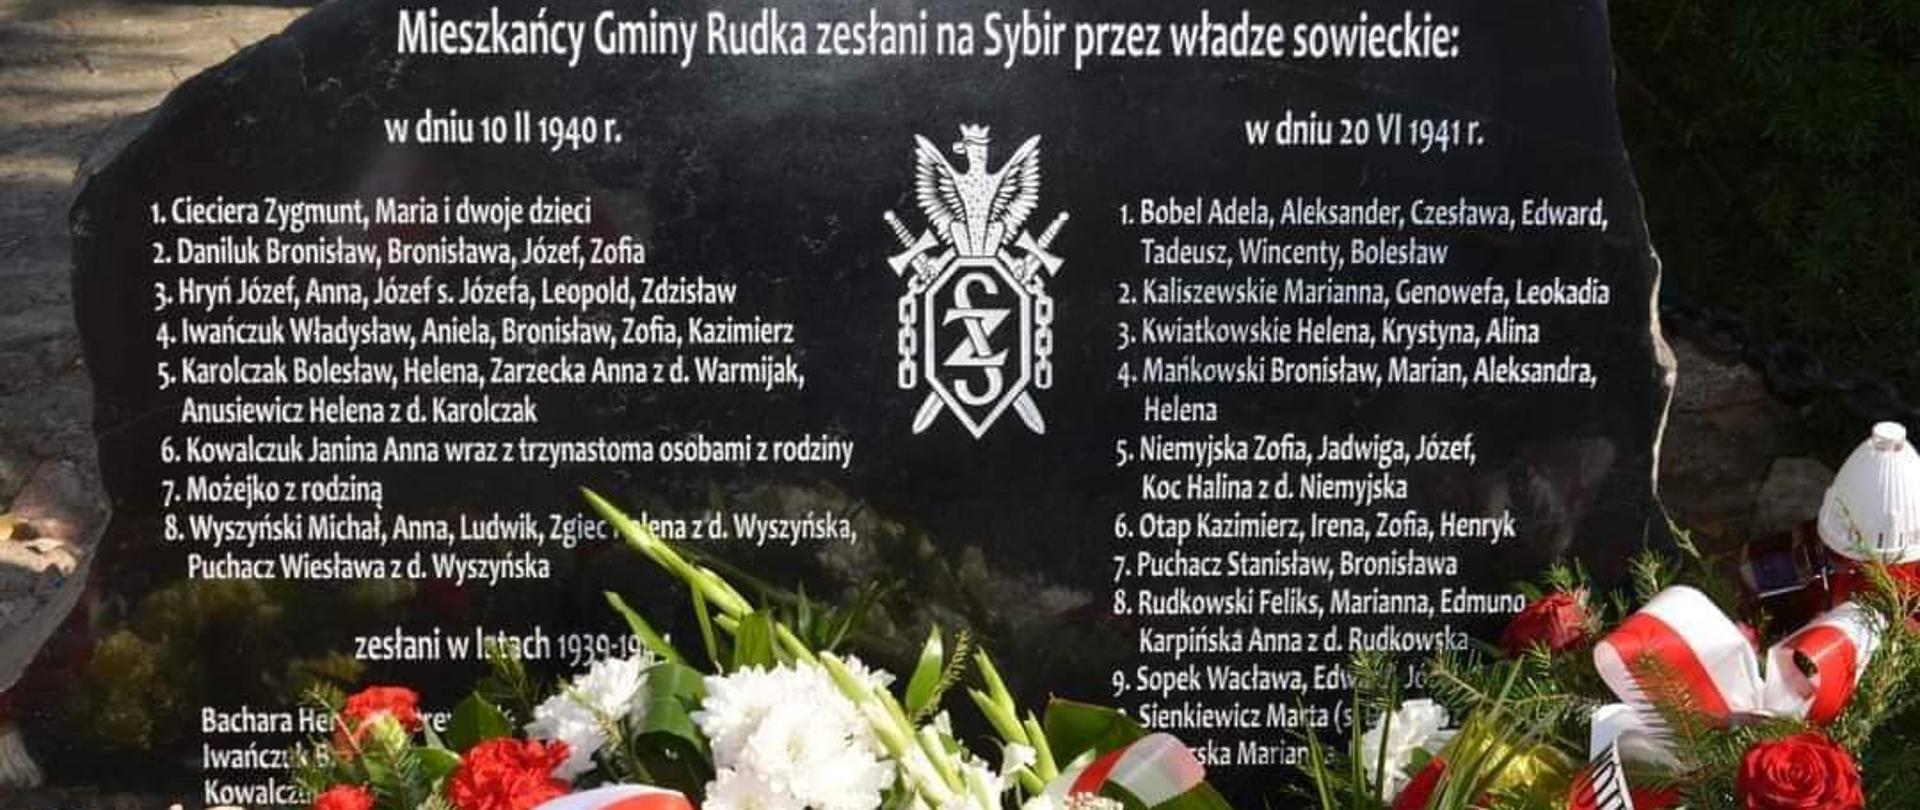 kamień z tablicą koloru czarnego z wypisanymi białymi literami imionami i nazwiskami mieszkańców Rudki wywiezionych na Sybir